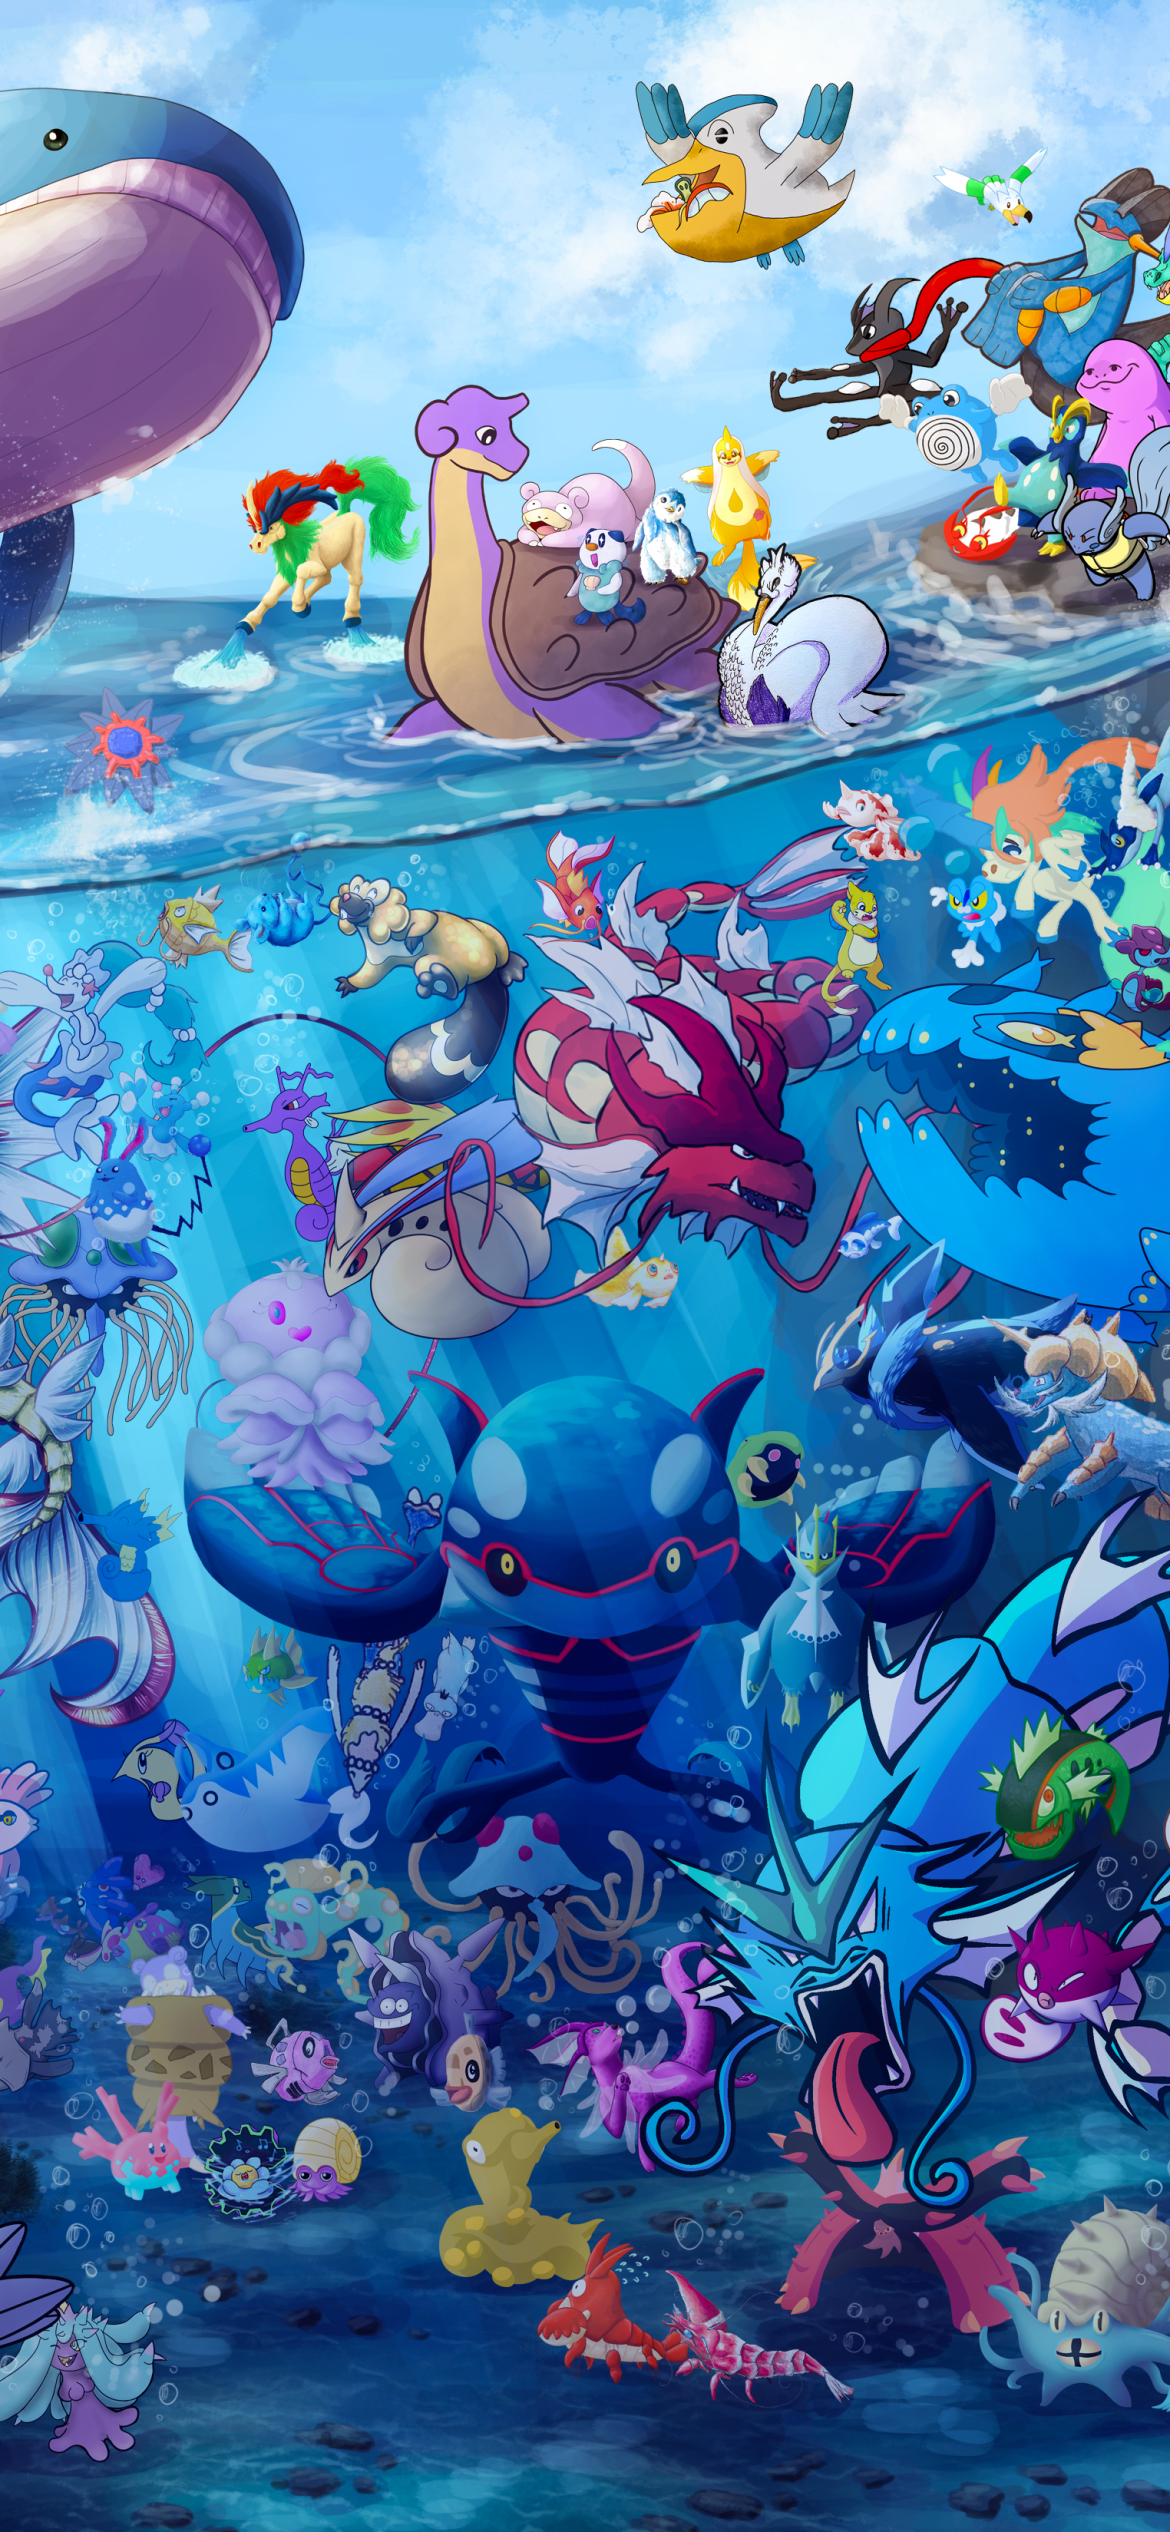 Anime Pokémon (), Pokemon HD phone wallpaper